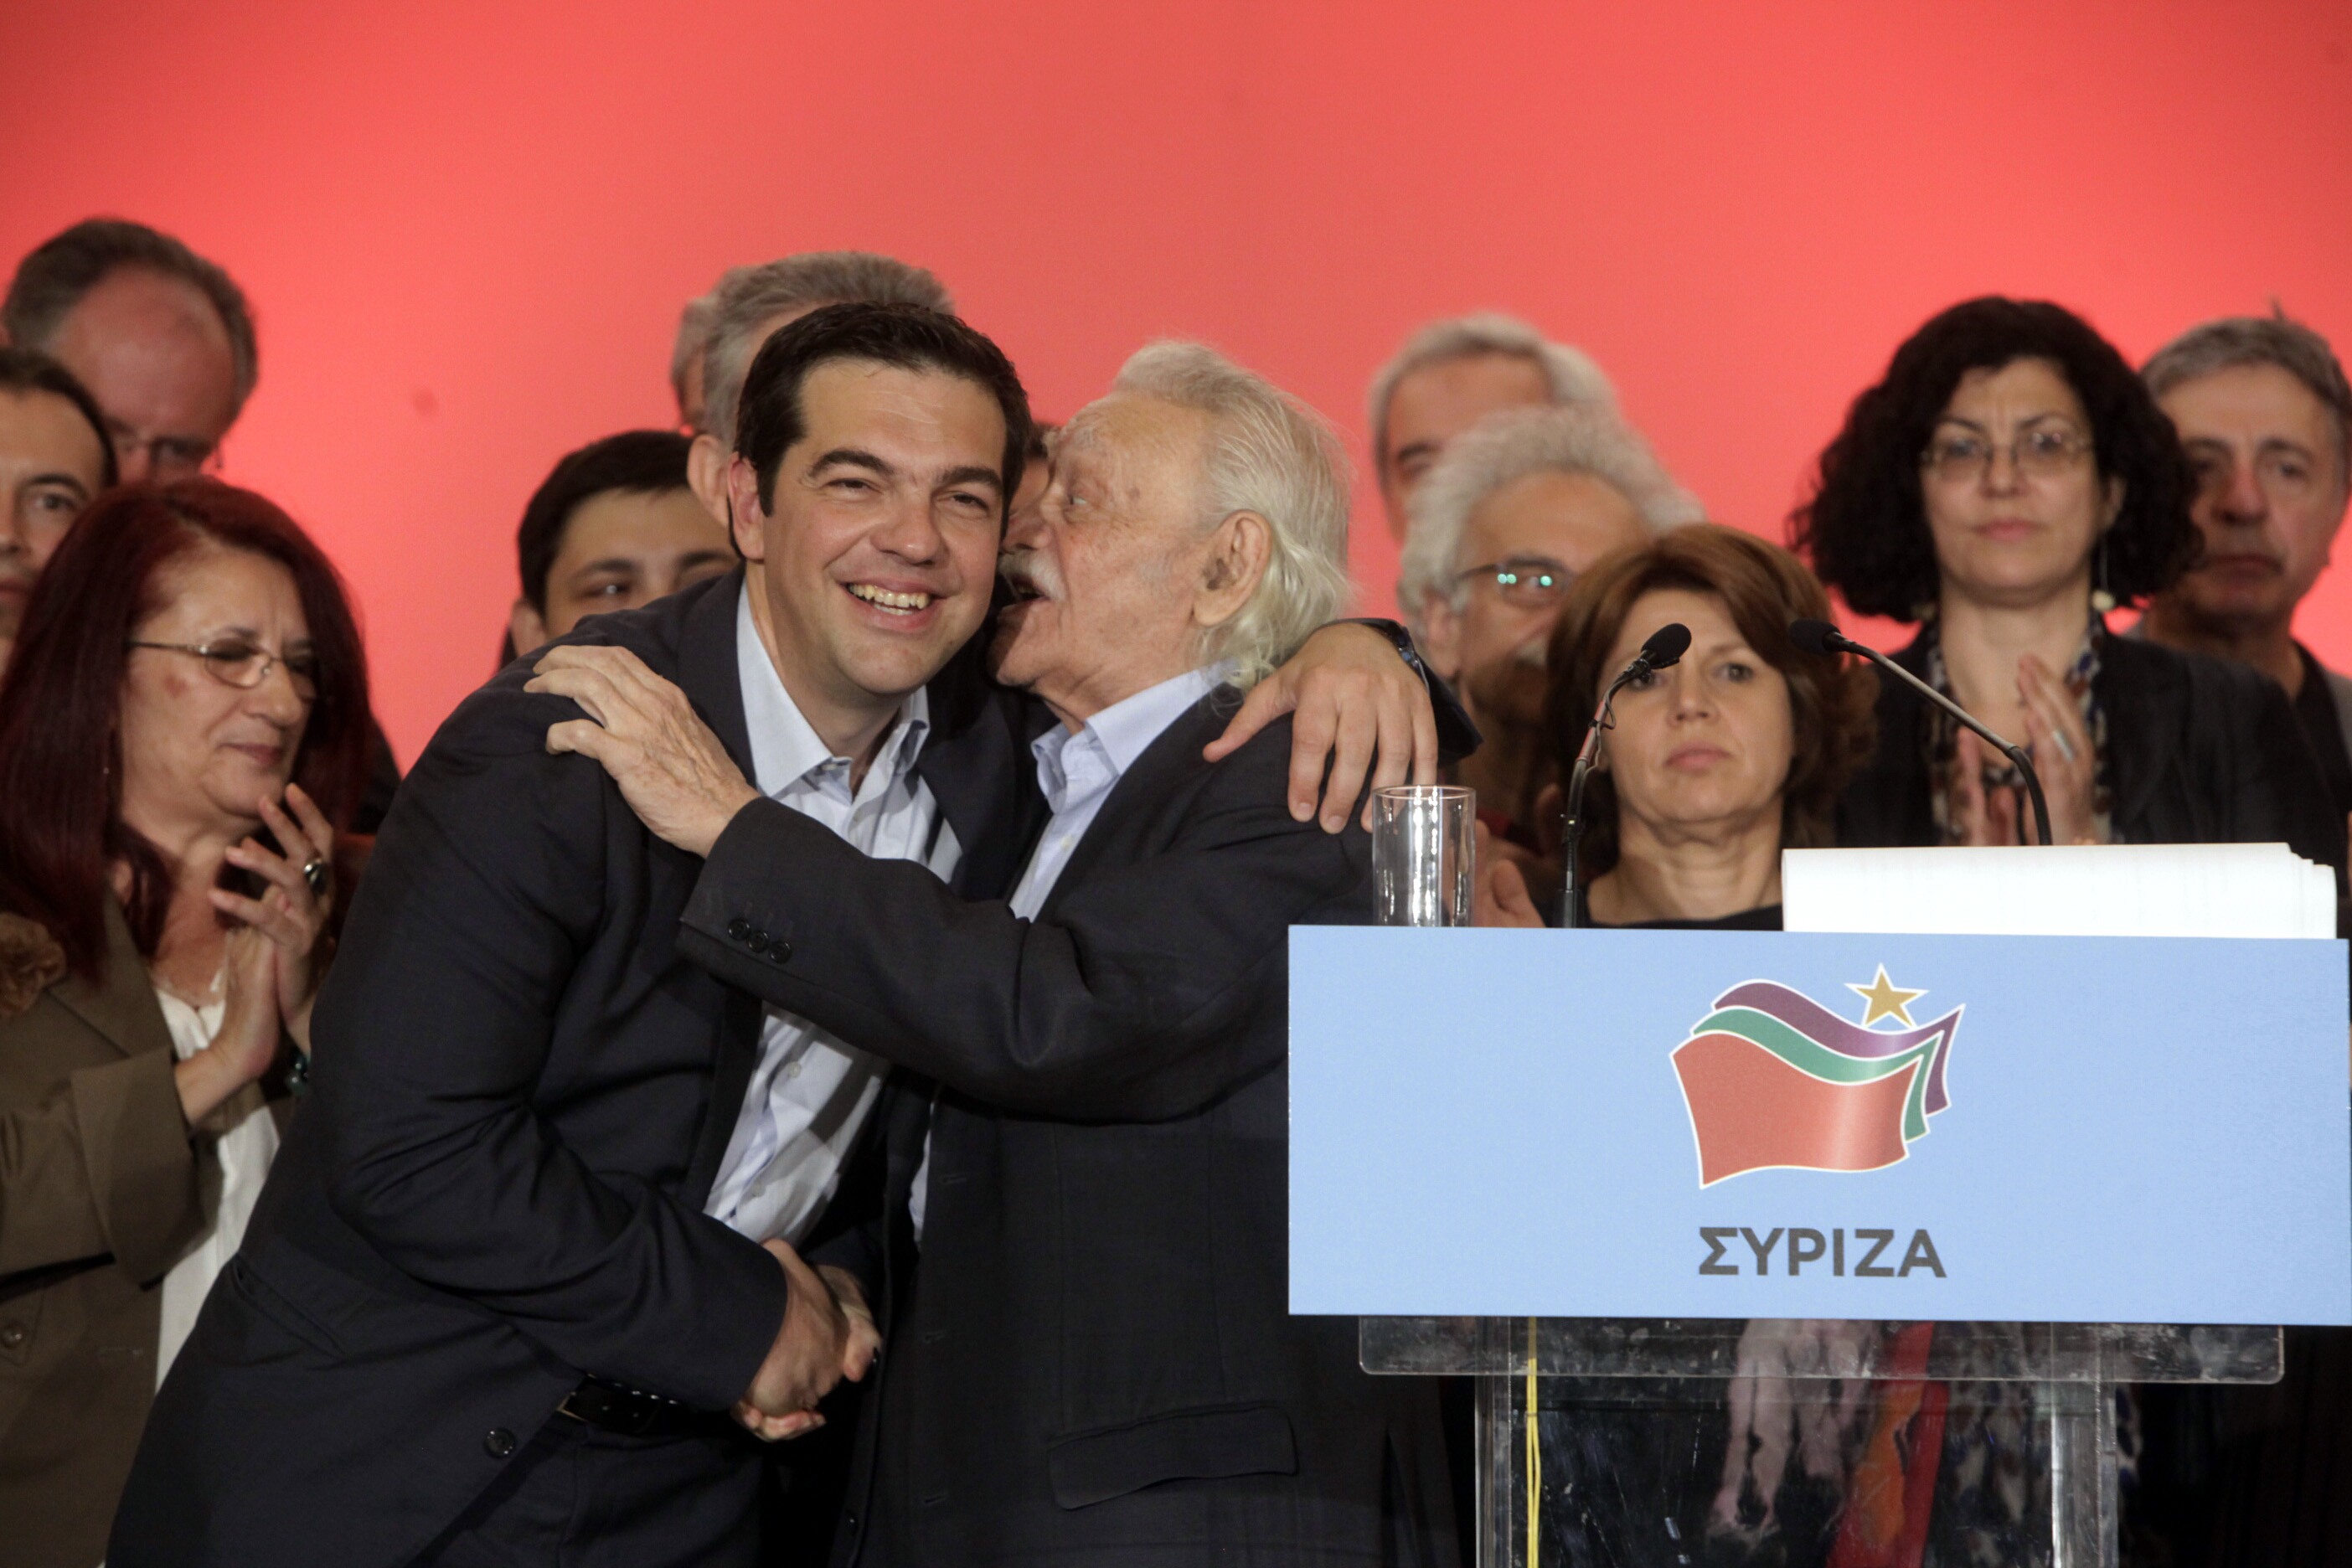 ΦΩΤΟ EUROKINISSI - H παρουσίαση του ευρωψηφοδελτίου του ΣΥΡΙΖΑ